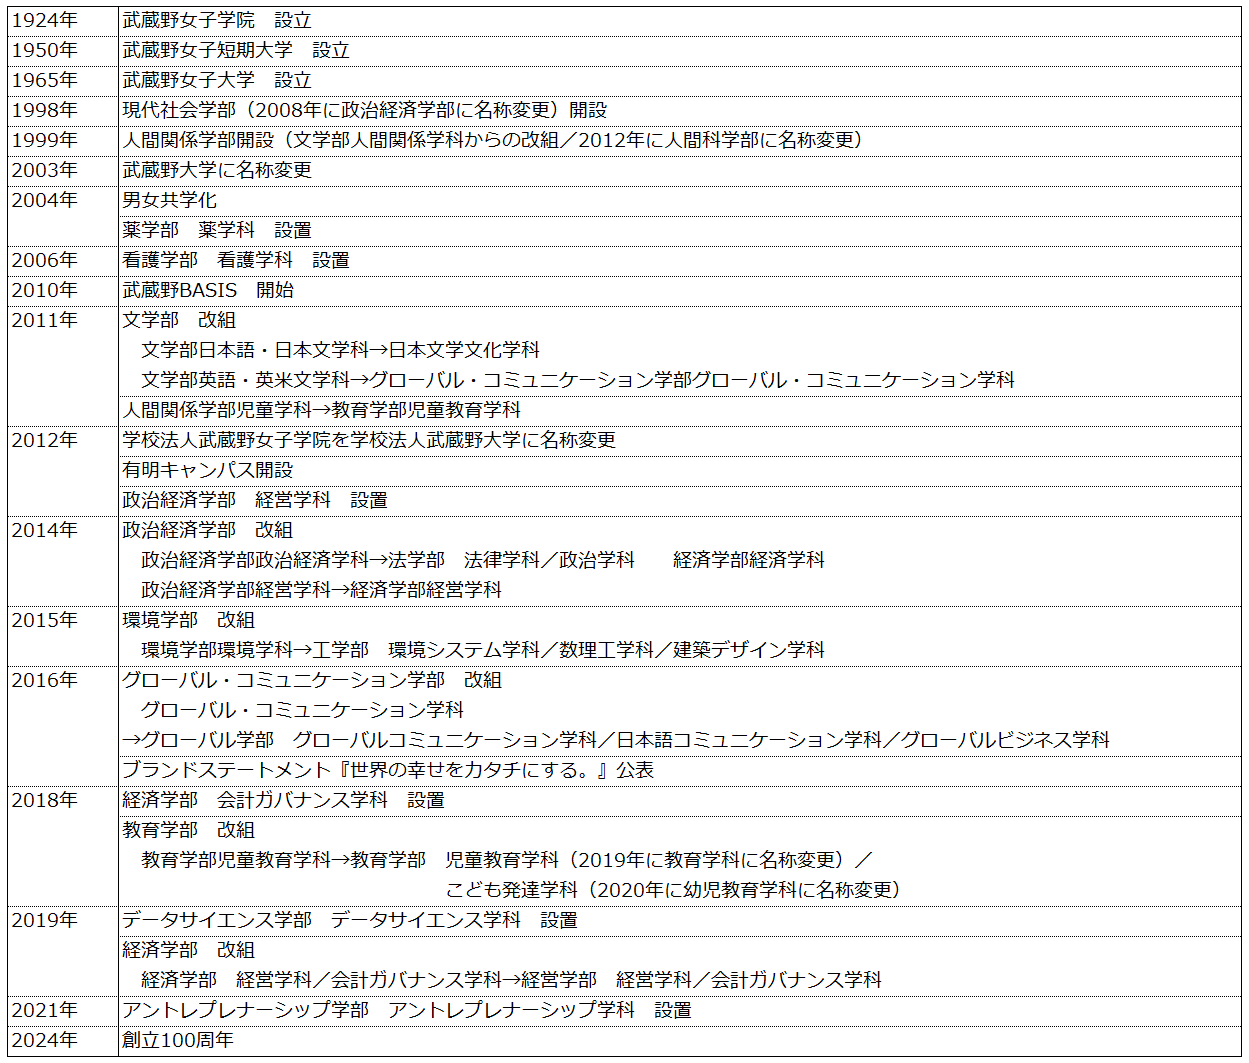 図表 武蔵野大学主要年表